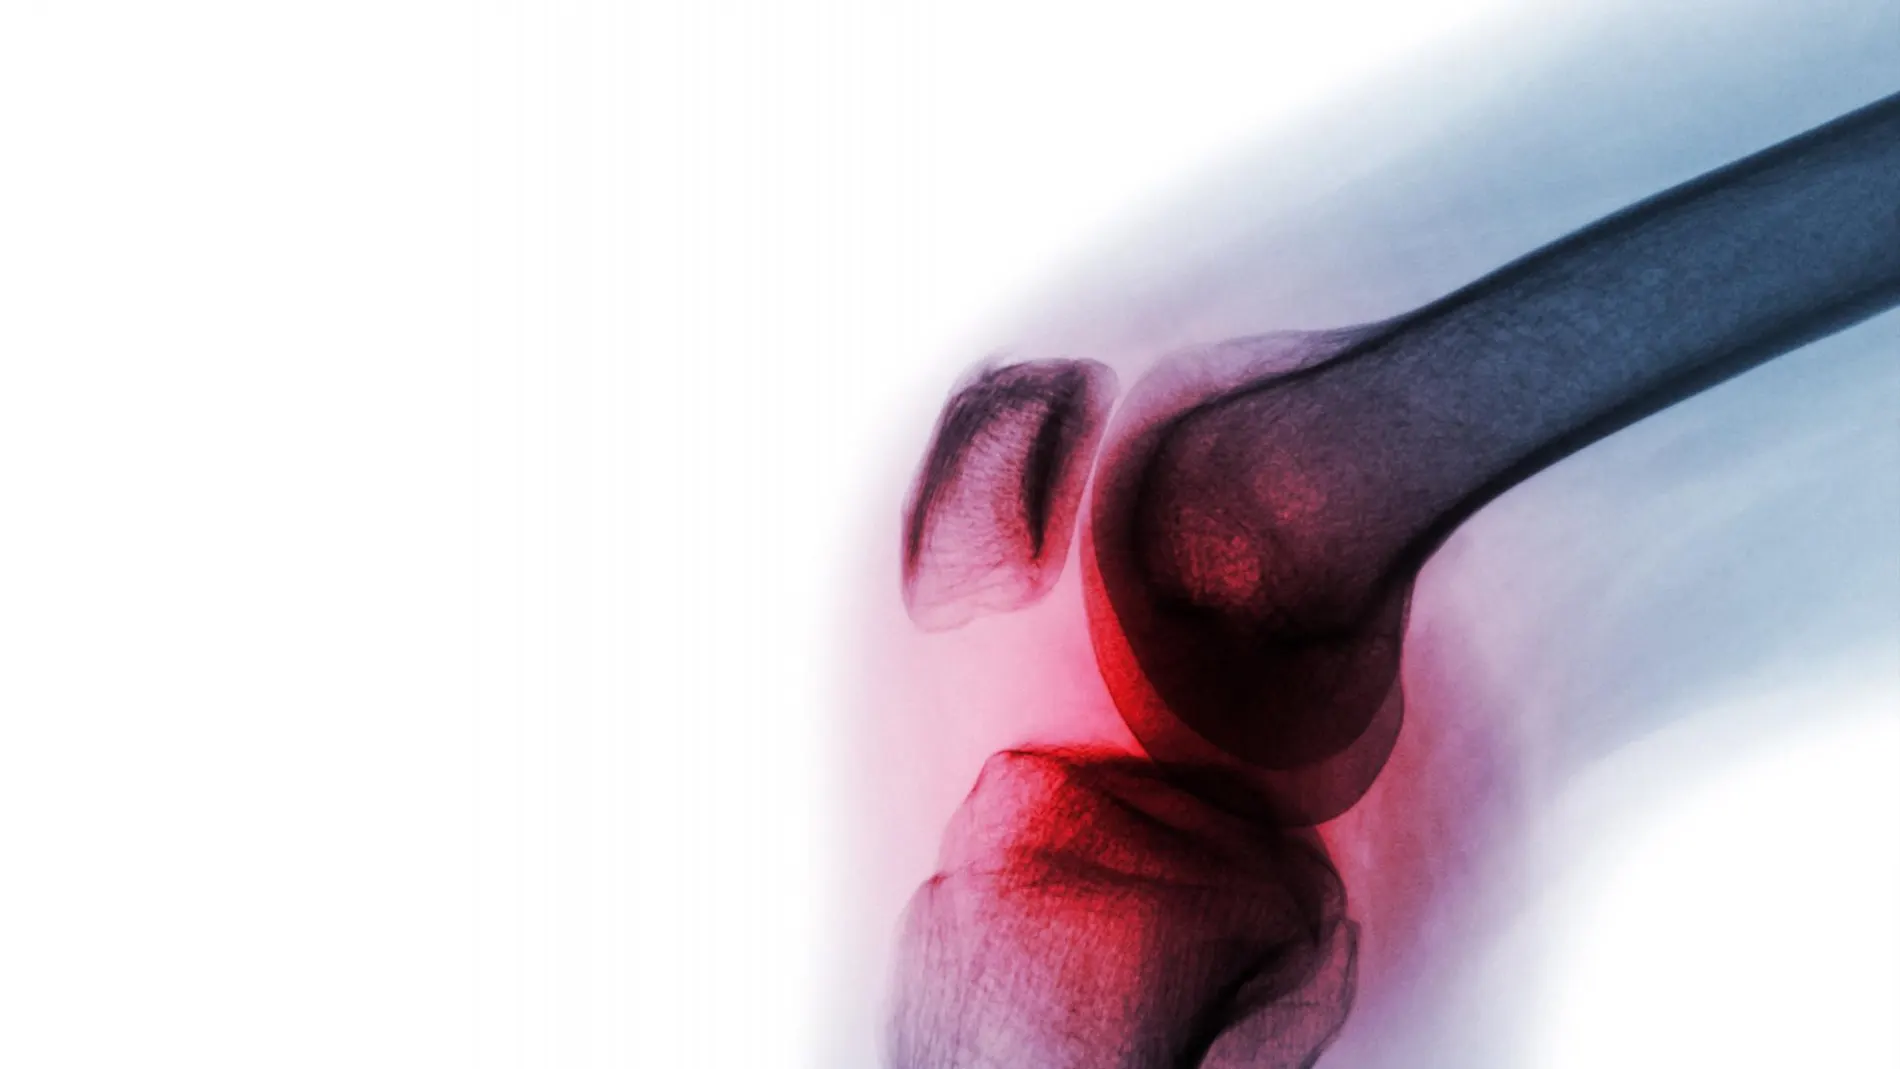 La artritis reumatoide es un trastorno inflamatorio autoinmunitario crónico que afecta al 1% de la población mundial y puede conllevar a graves problemas de salud.